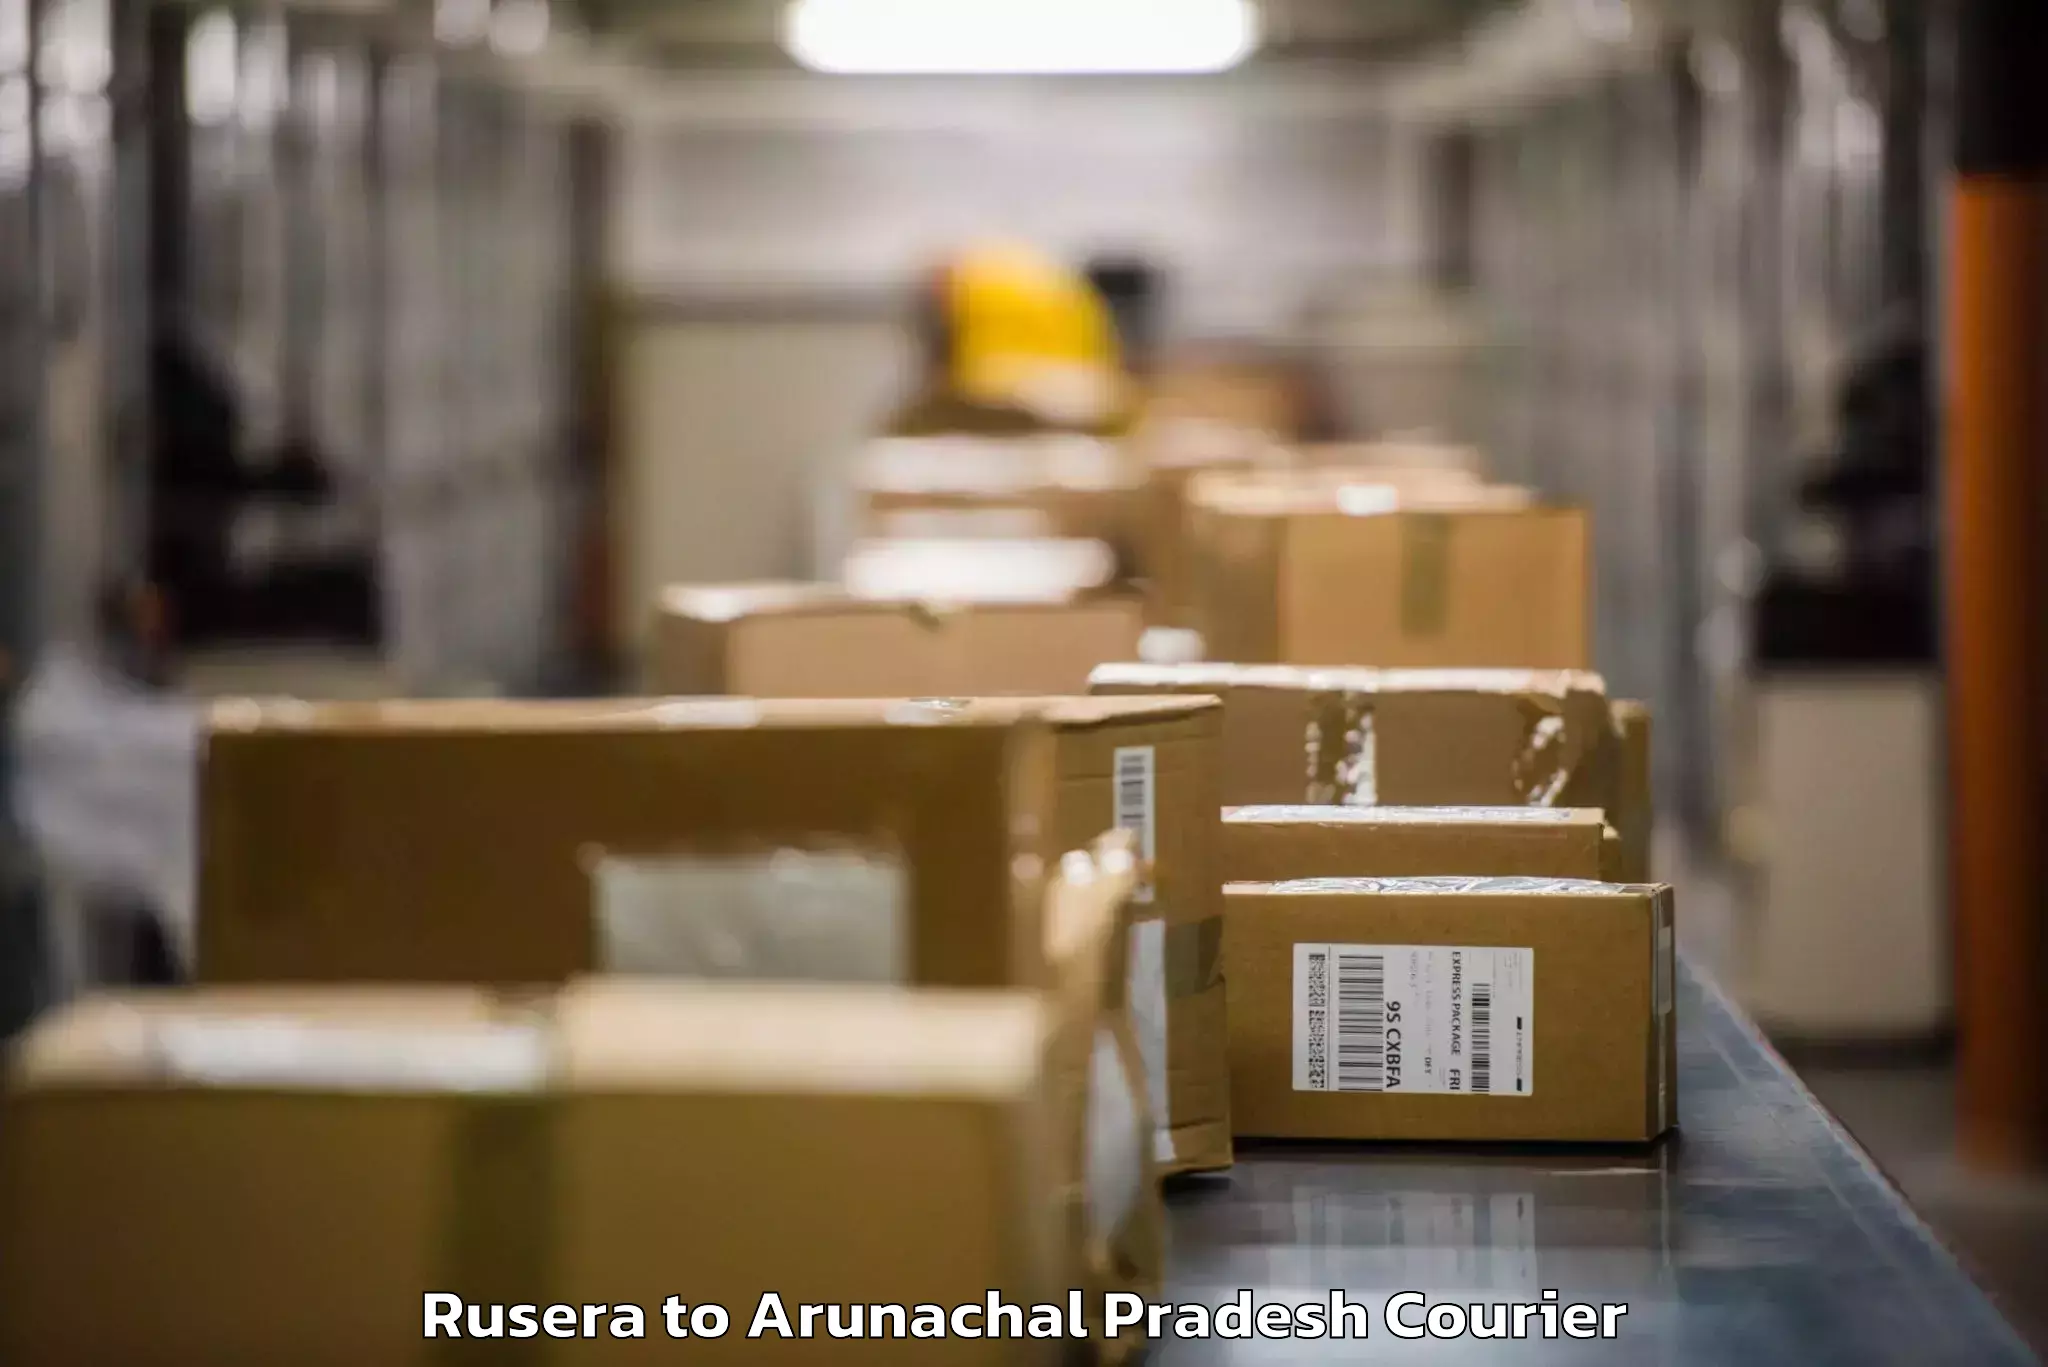 Luggage transfer service Rusera to Arunachal Pradesh